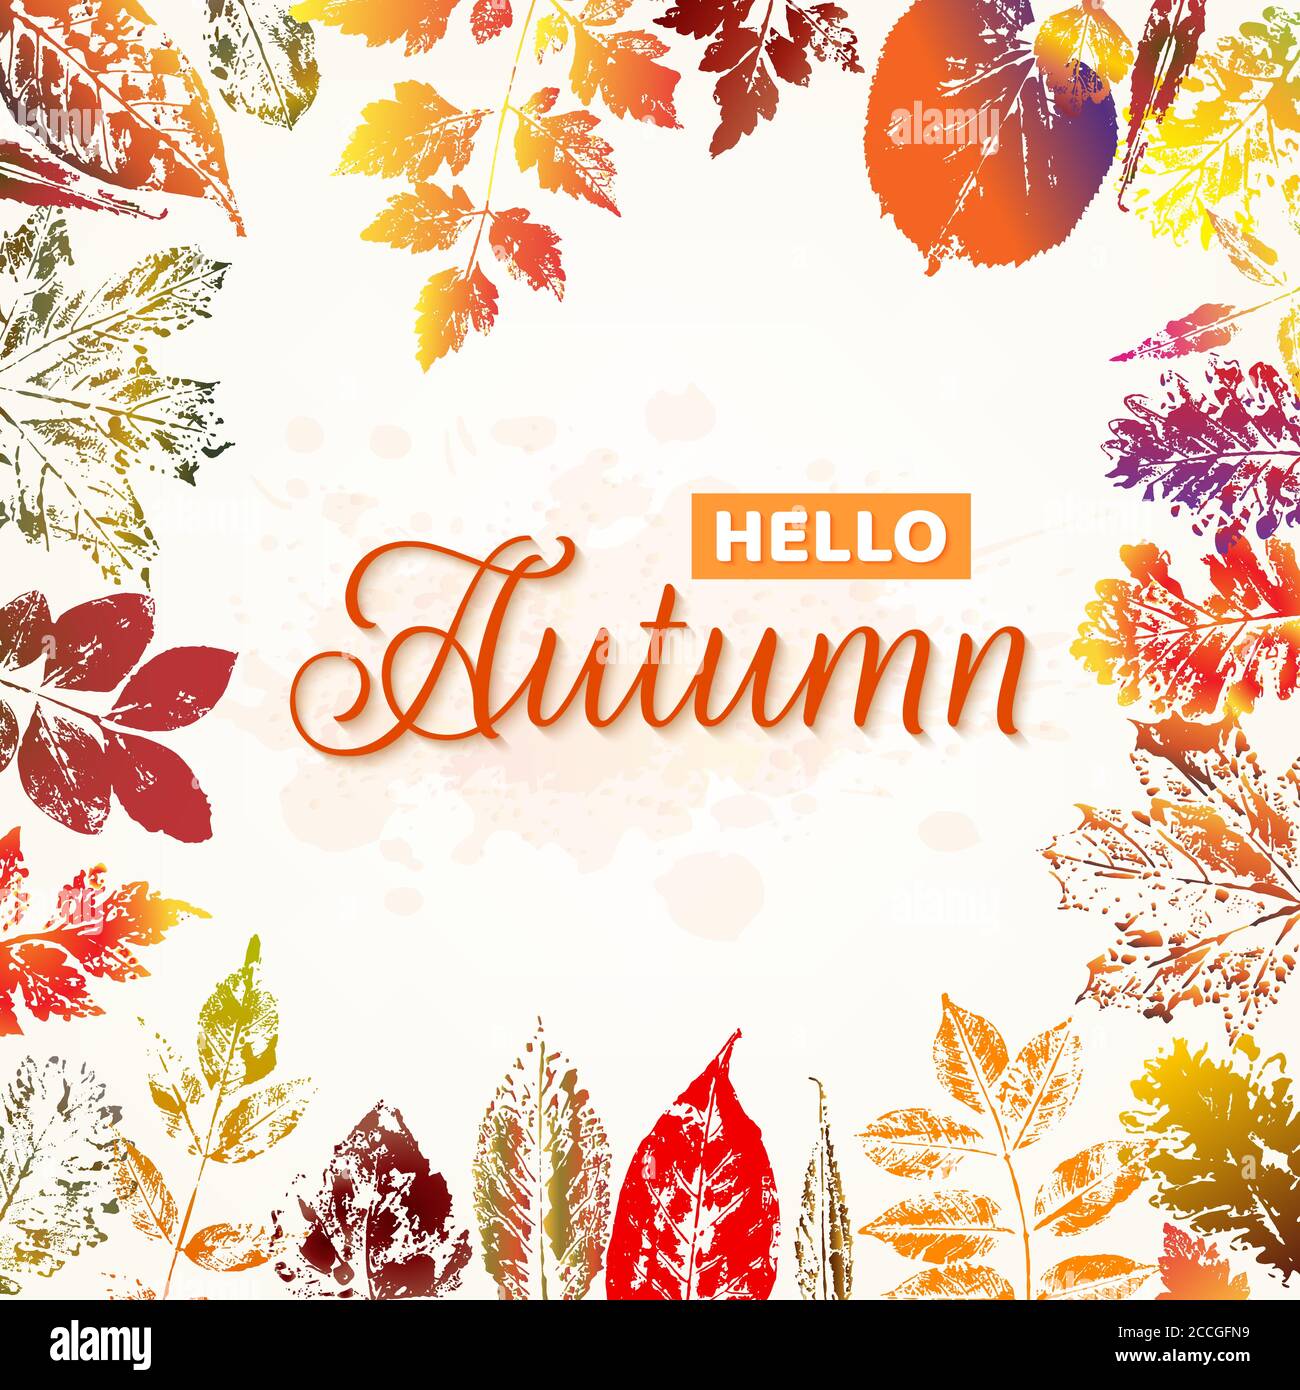 Hallo Herbst Natur Hintergrund mit bunten Blättern Abdrücke. Vektorgrafik Stock Vektor